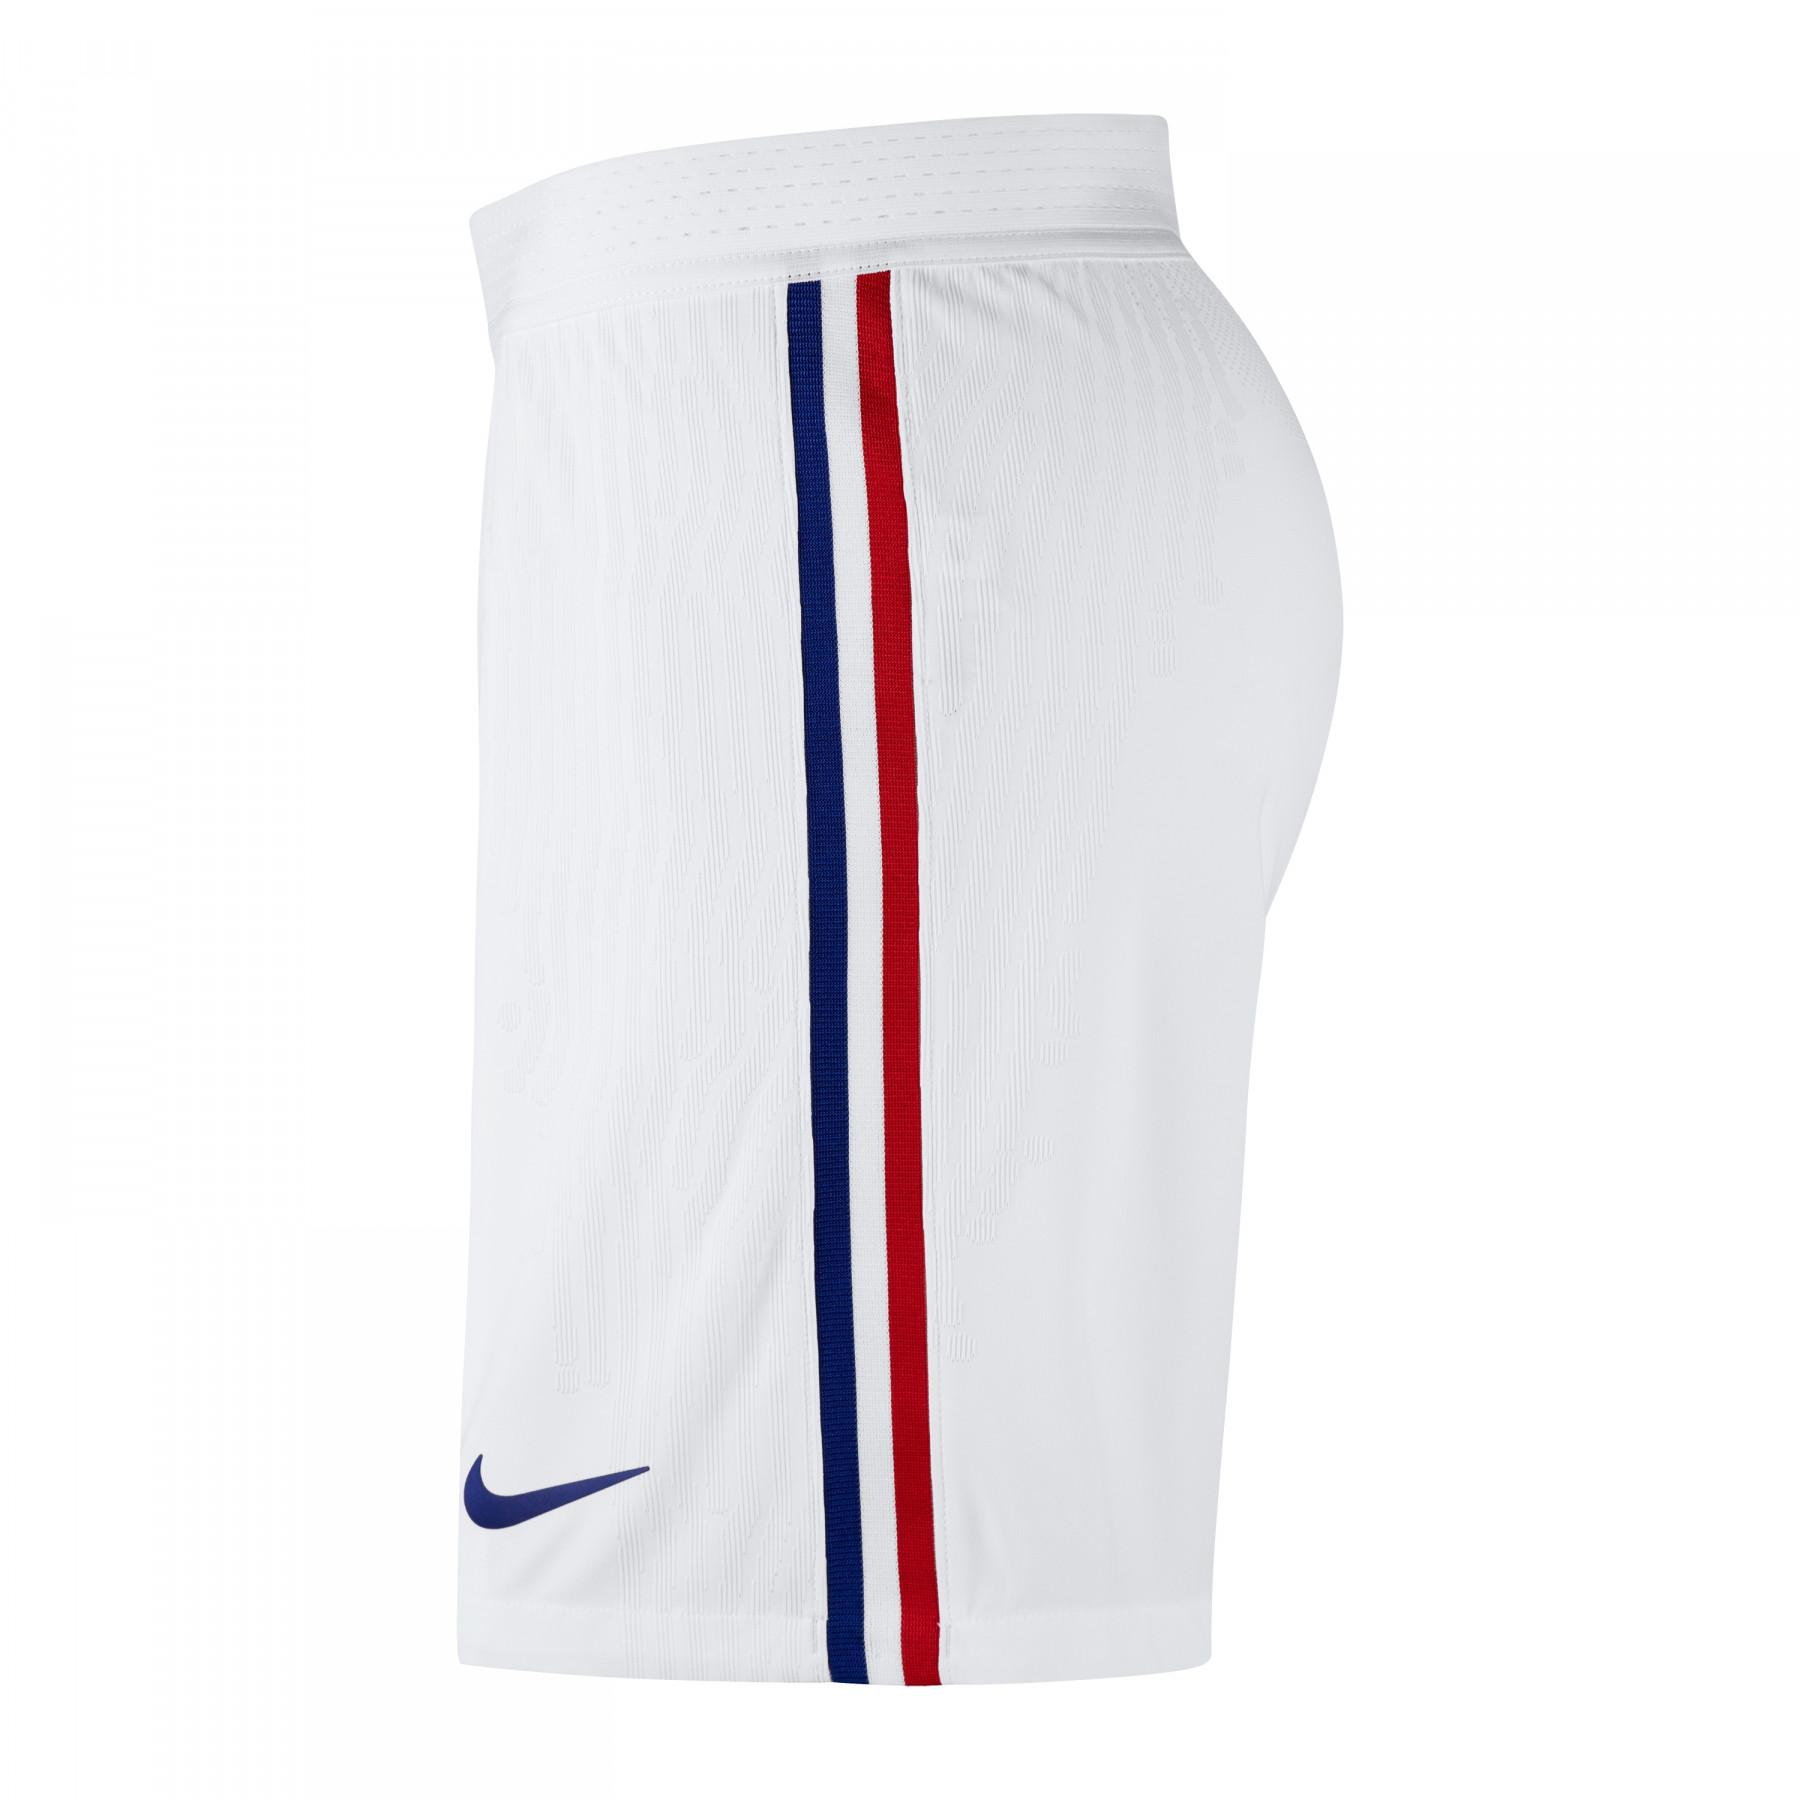 Auténticos pantalones cortos para exteriores France 2020